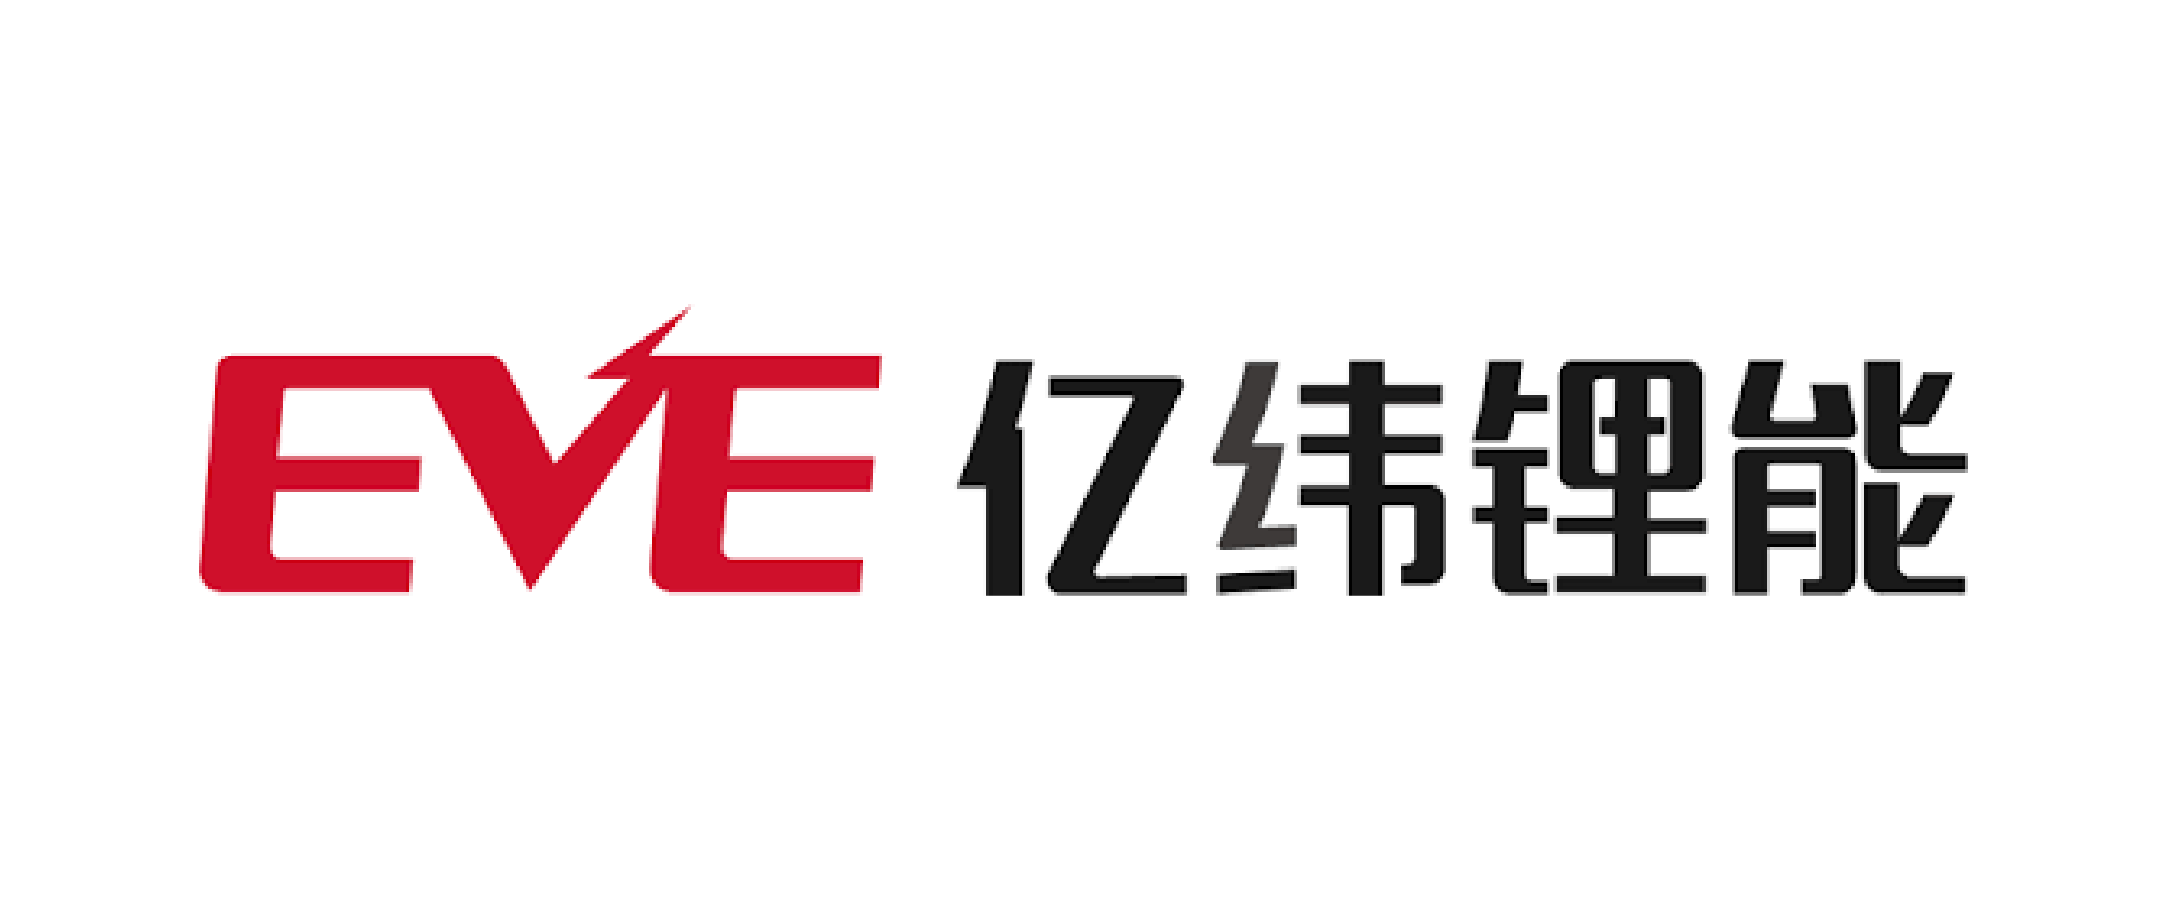 Ф. «Eve Energy co., Ltd» Label. Ф. «Eve Energy co., Ltd».